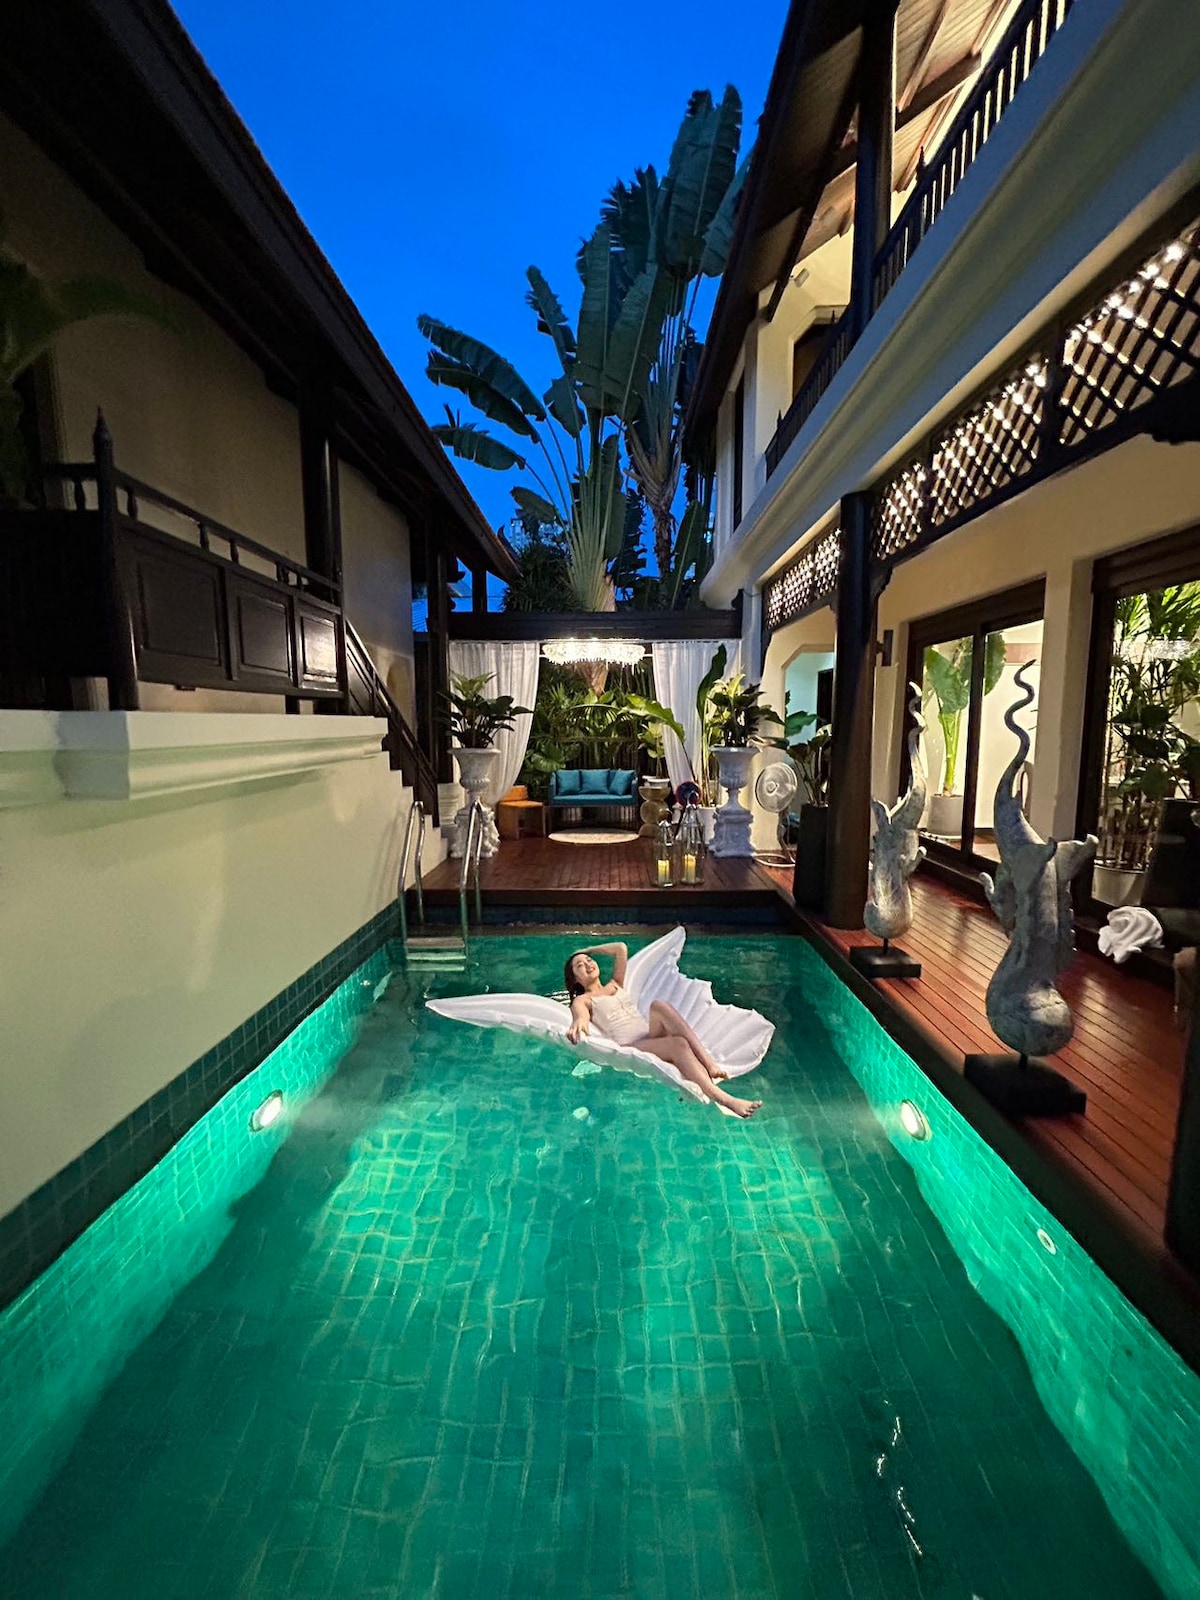 免费接机 泰国皇家园林豪华别墅 繁华商业区私家泳池 管家服务